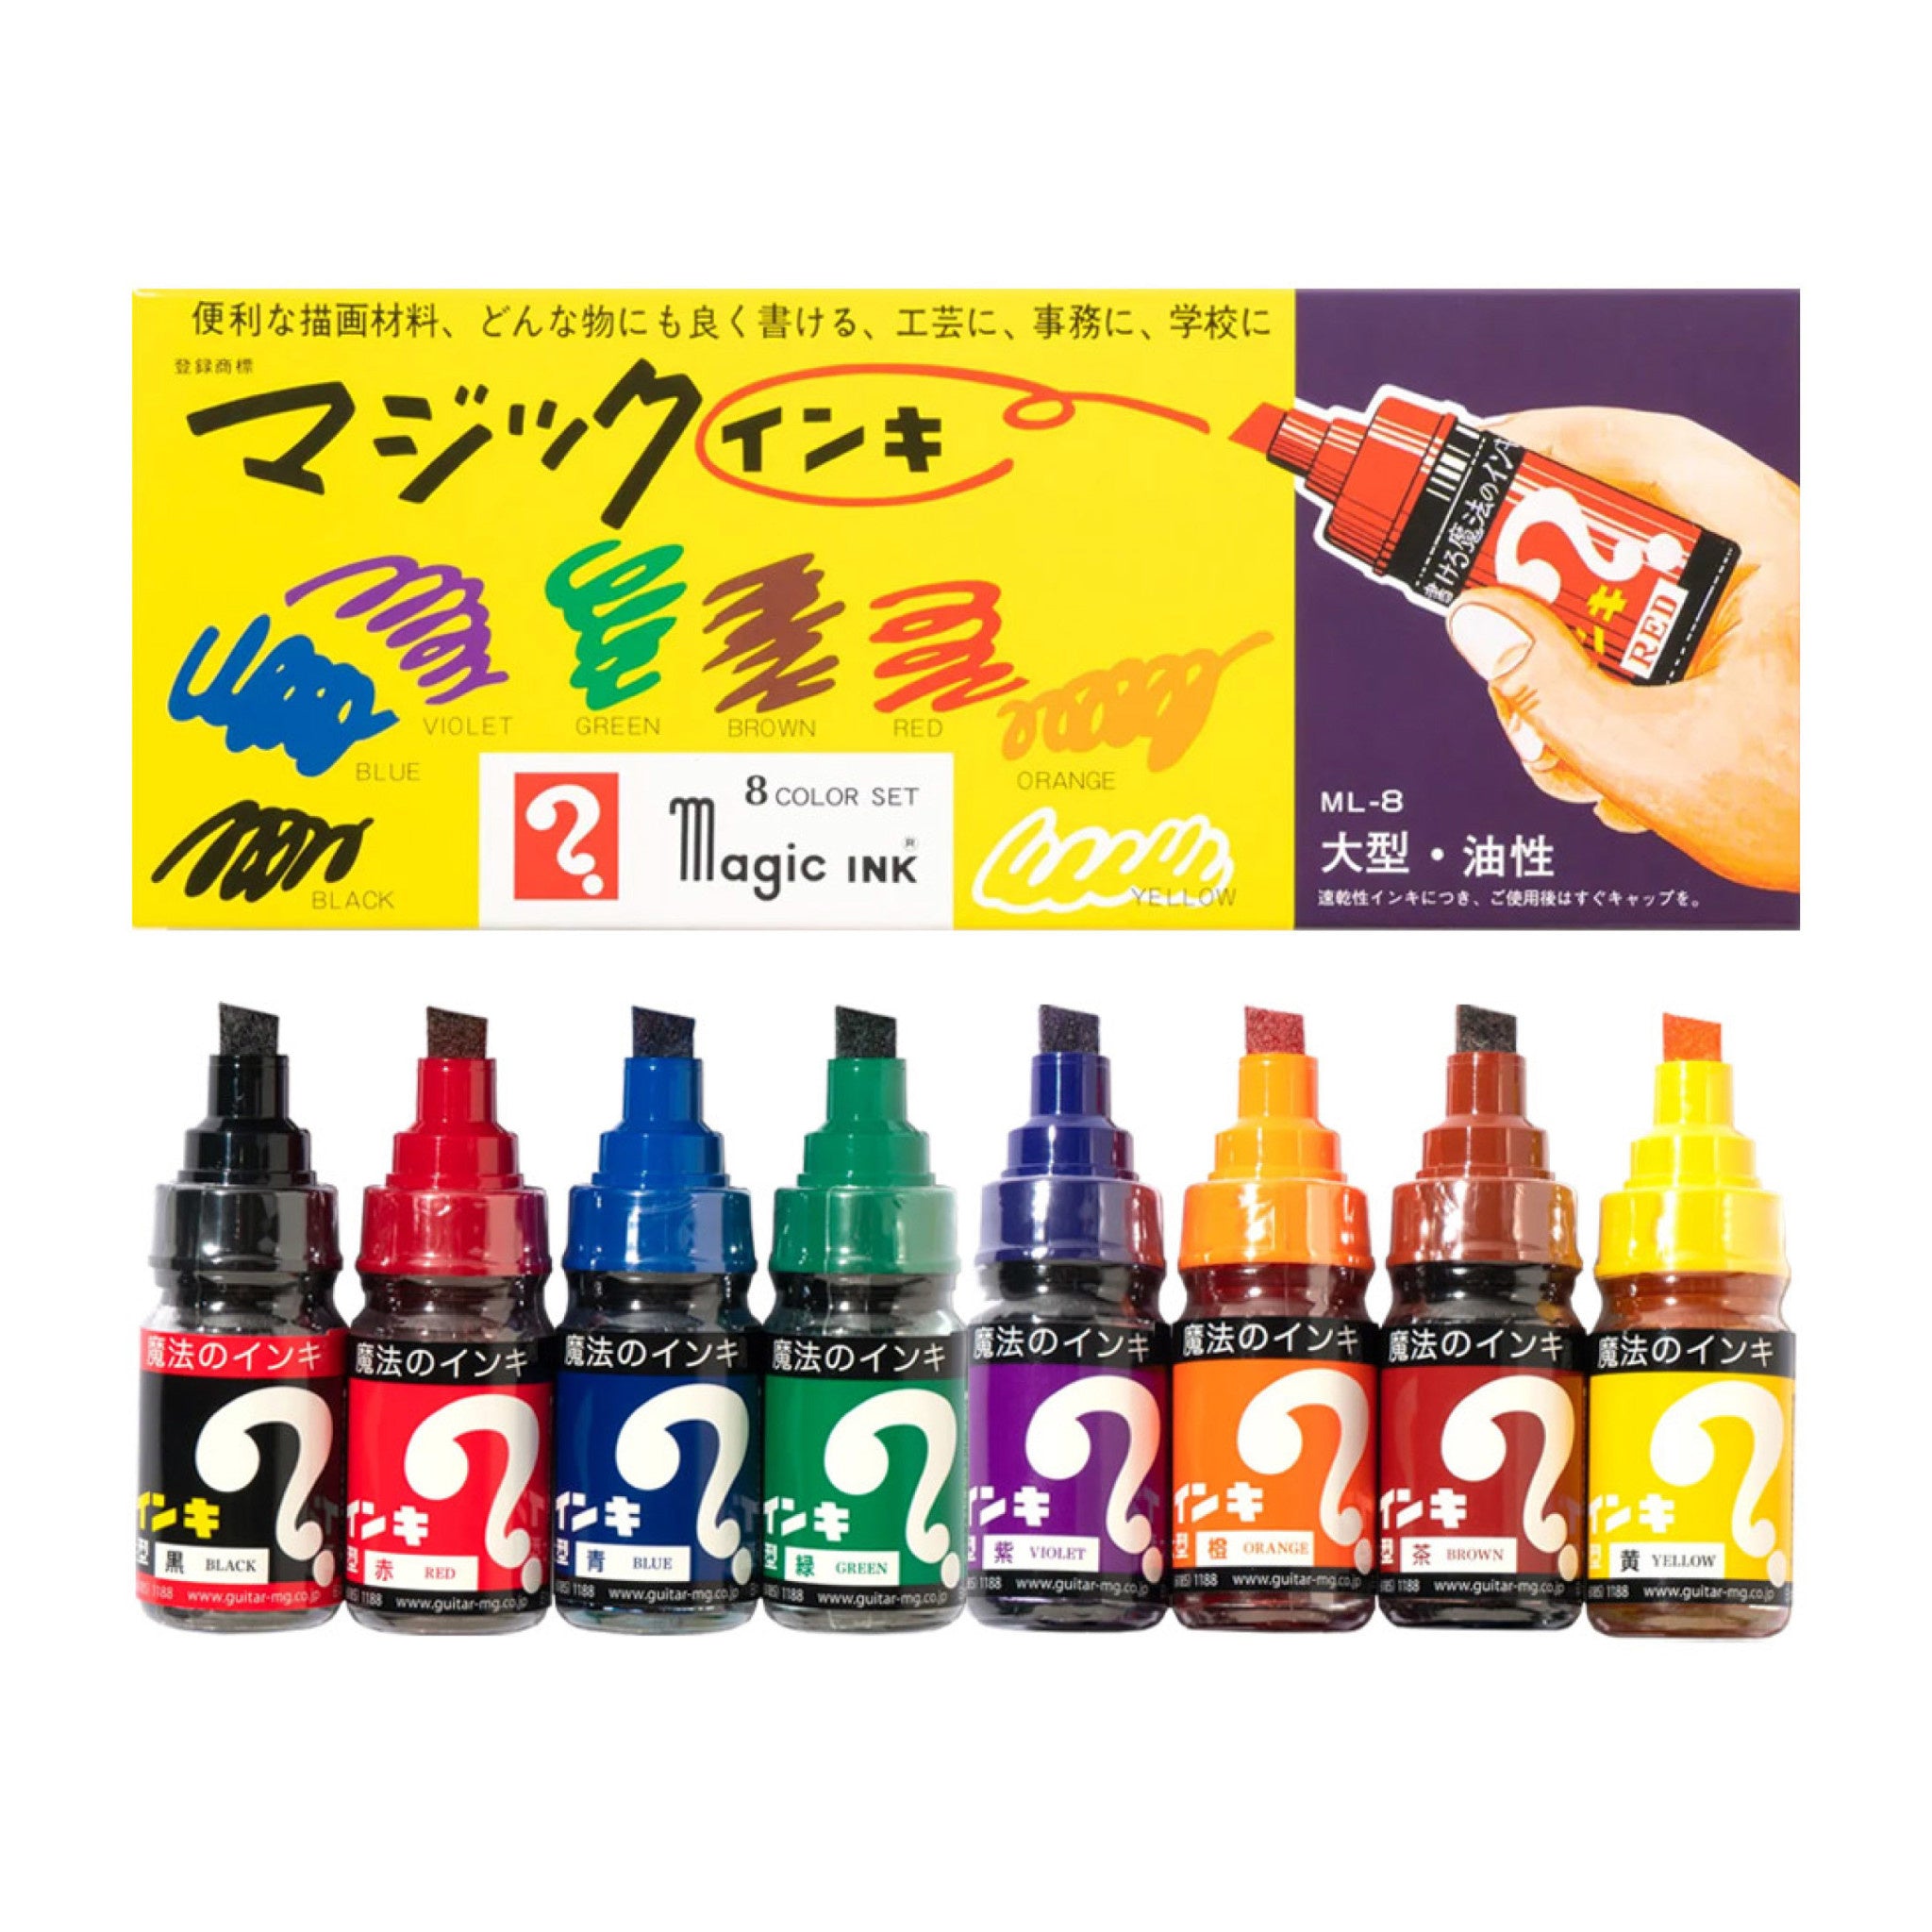 KRINK Magic Ink 8 Color Set - Wynwood Walls Shop